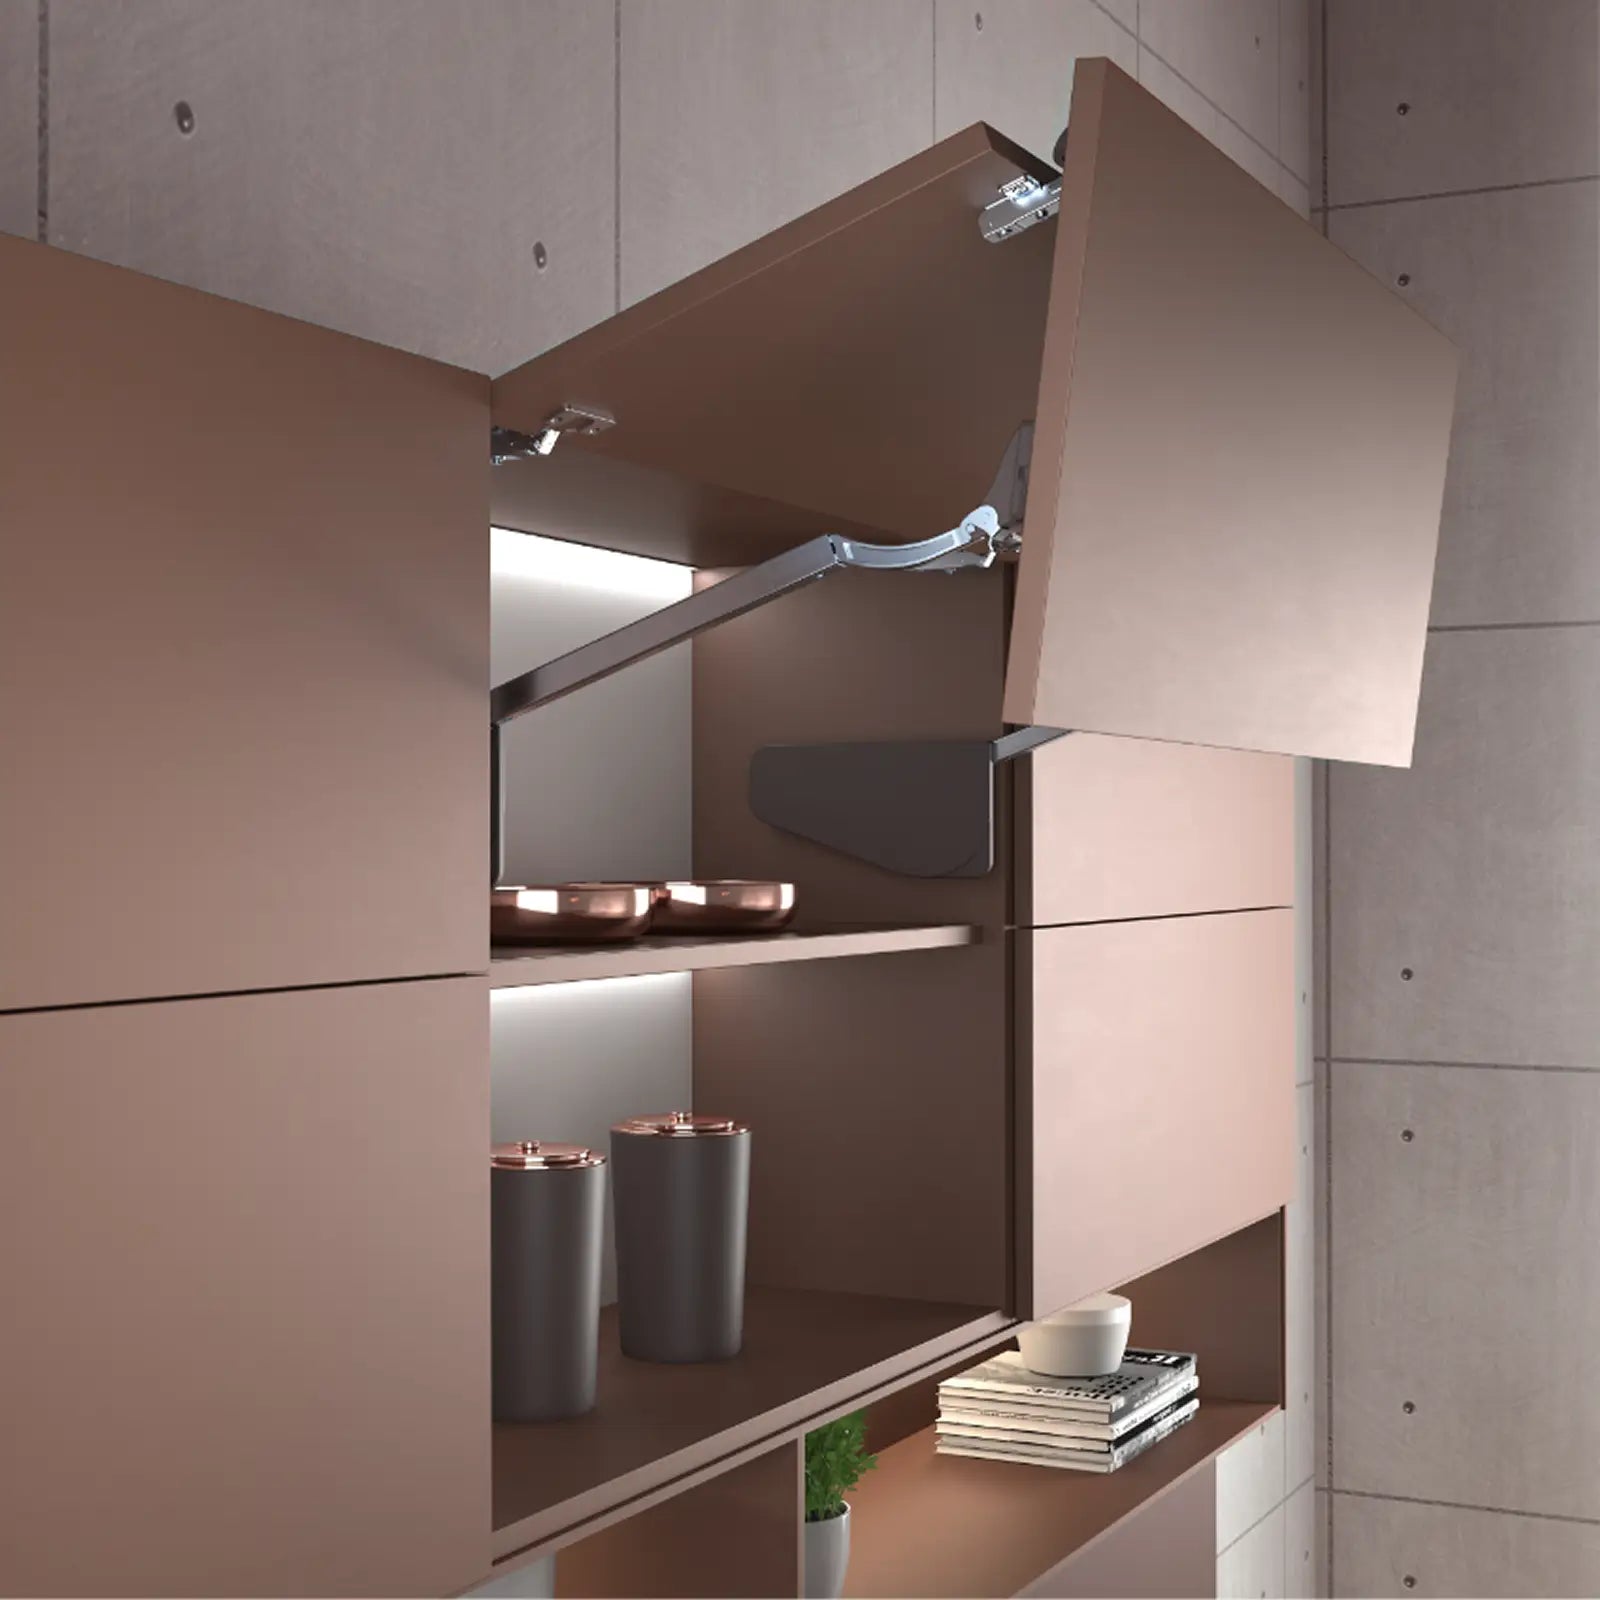 MultiMech Bi-Fold Cabinet Door Lift Up Mechanism - Grey - Decor And Decor